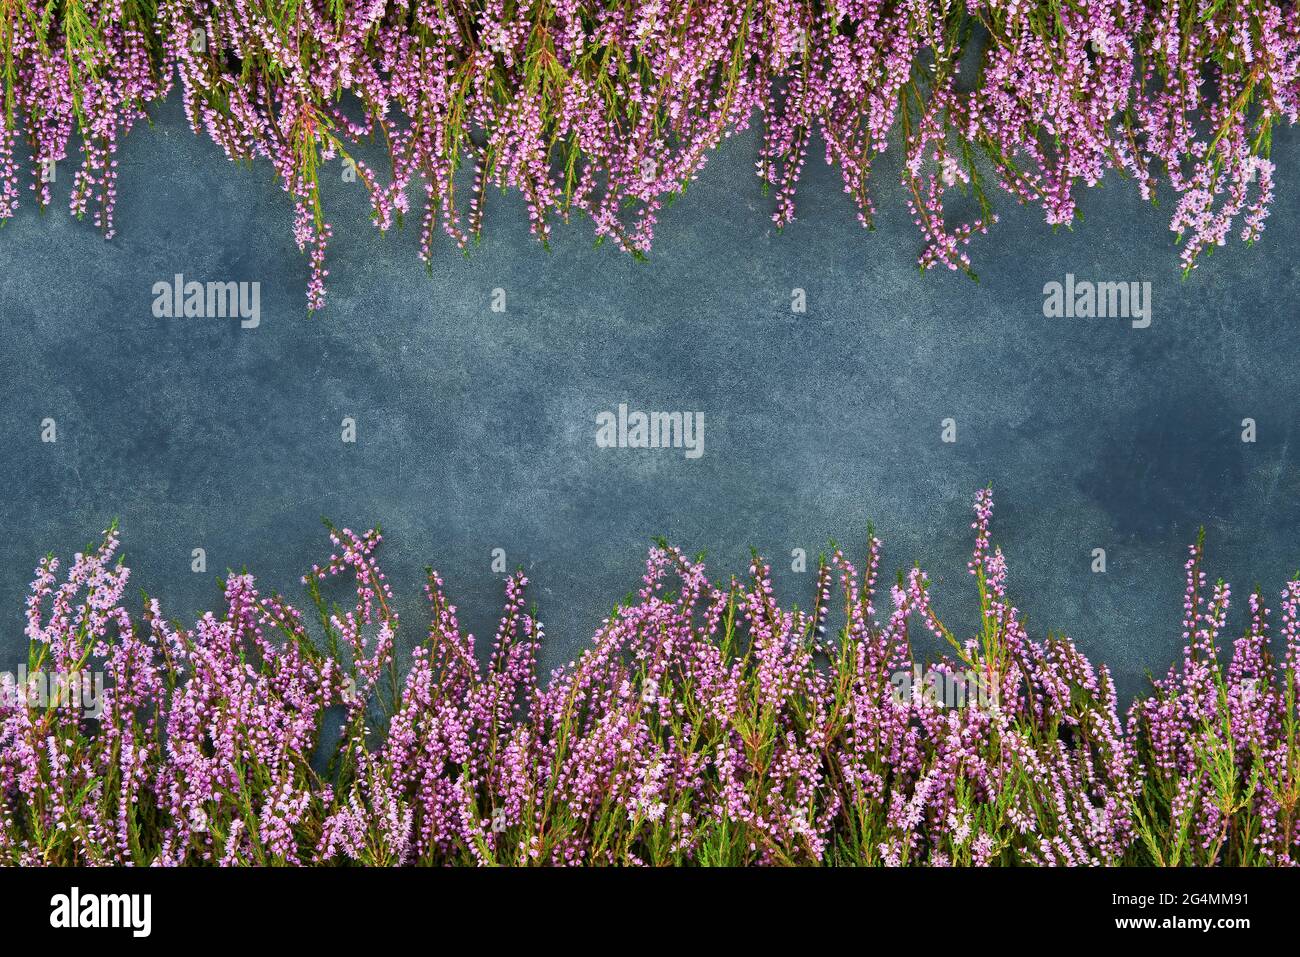 Pink Common Heather Blumen Rahmen auf einem blauen Hintergrund. Platz für Text kopieren, Draufsicht. Flach liegend, selektiver Fokus Stockfoto